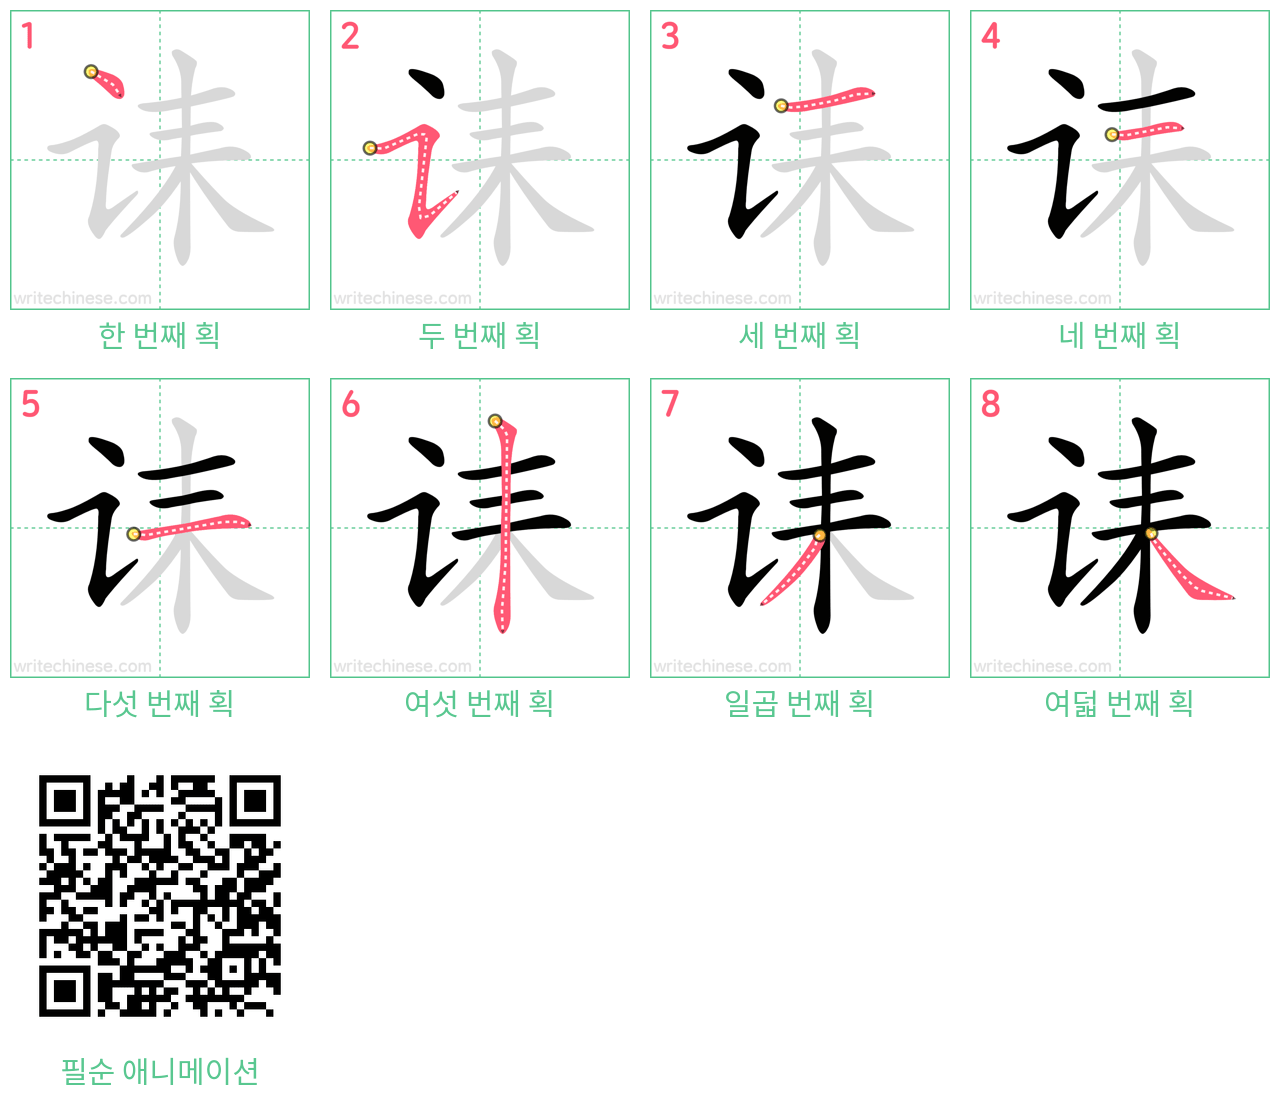 诔 step-by-step stroke order diagrams